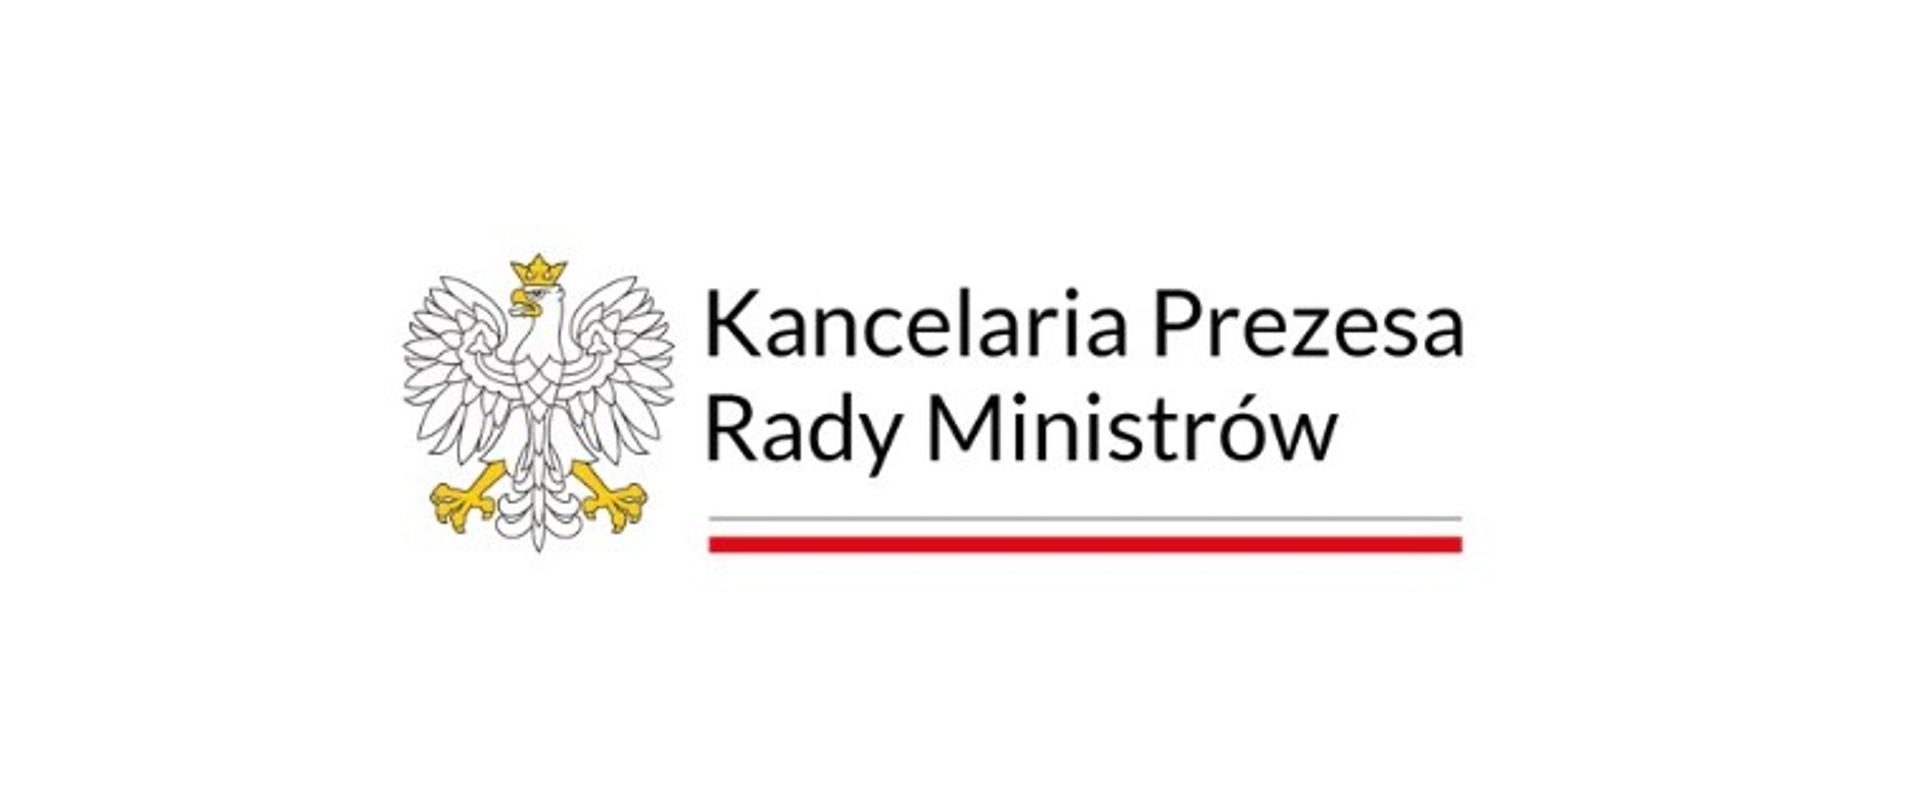 Obraz przedstawia logo Kancelarii Prezesa Rady Ministrów